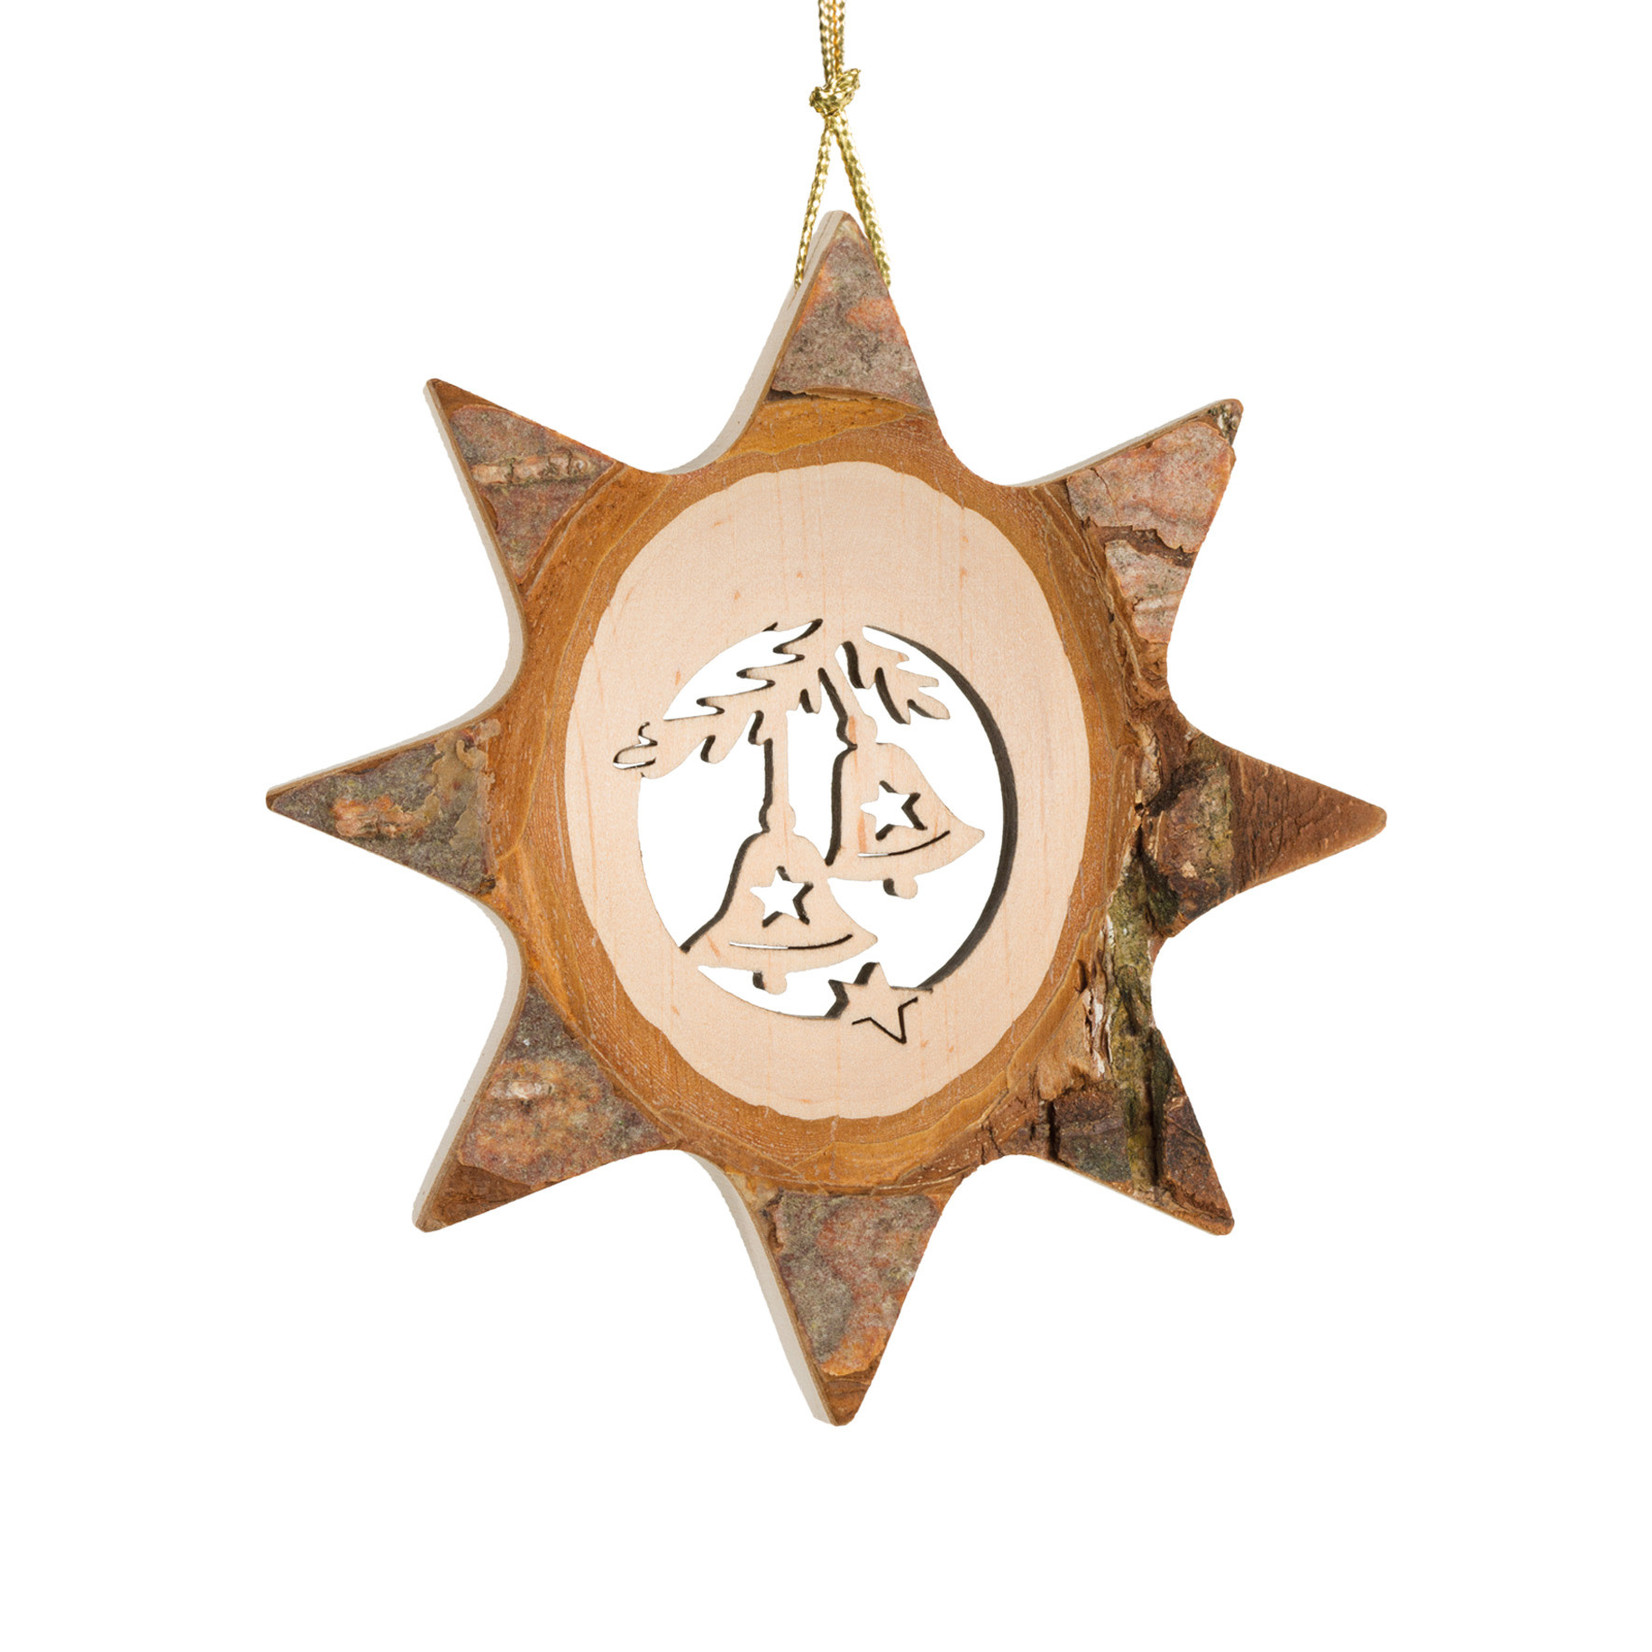 Waldfabrik Ornament Star Bark - Bells